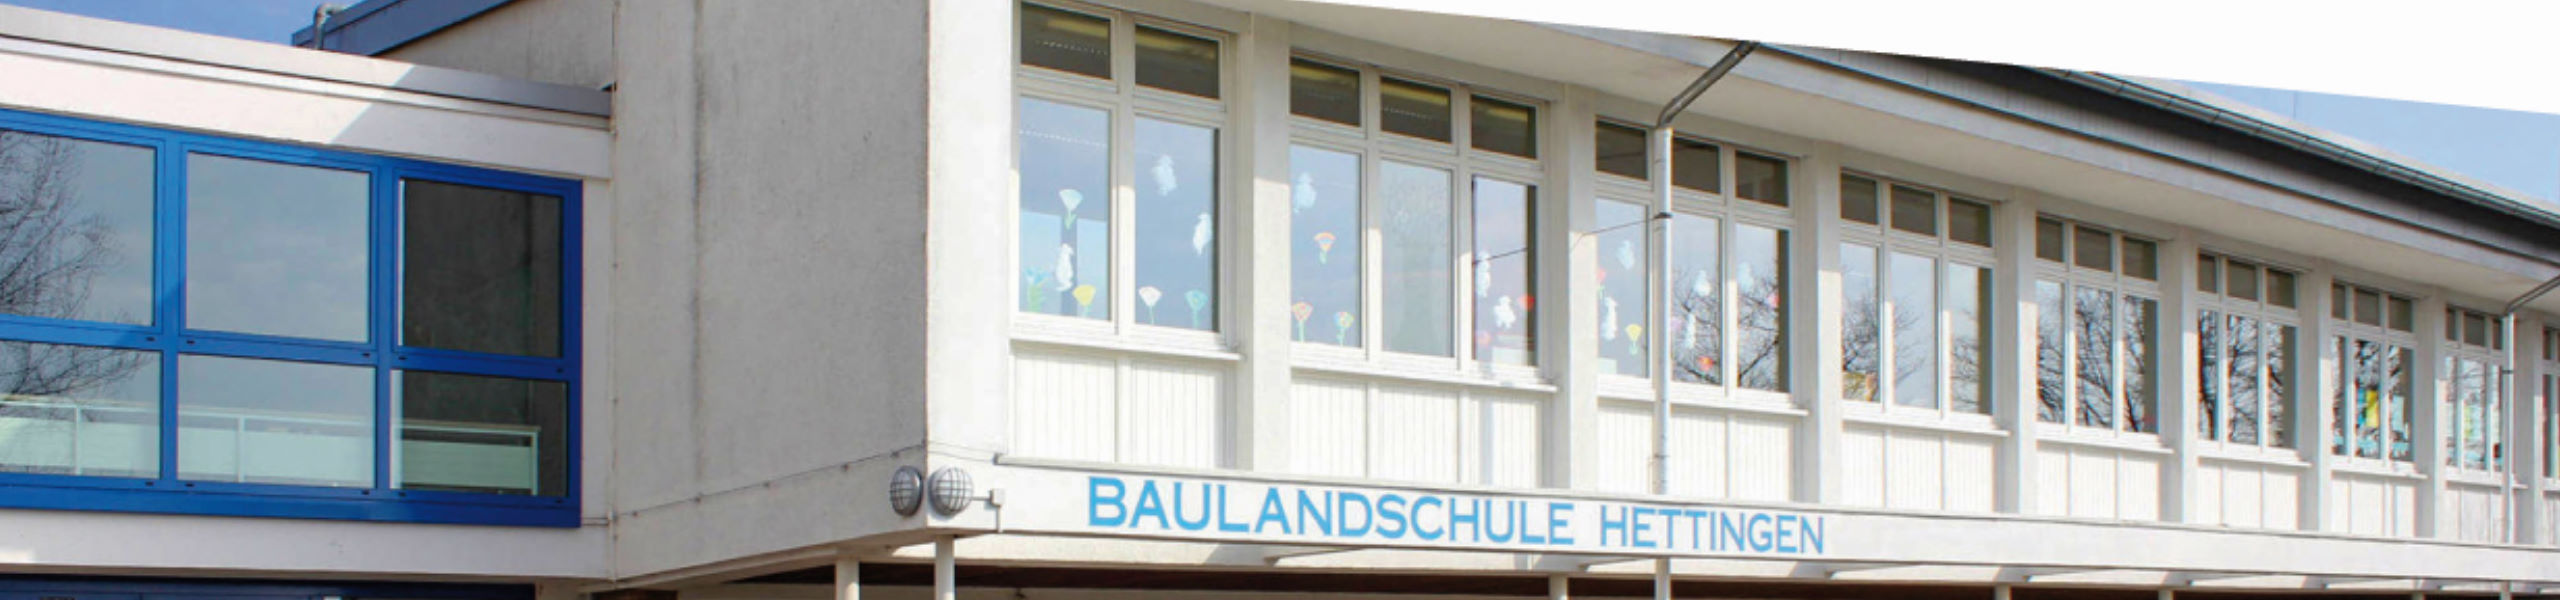 Baulandschule Hettingen -  Zerspanungswerkzeuge Hieke